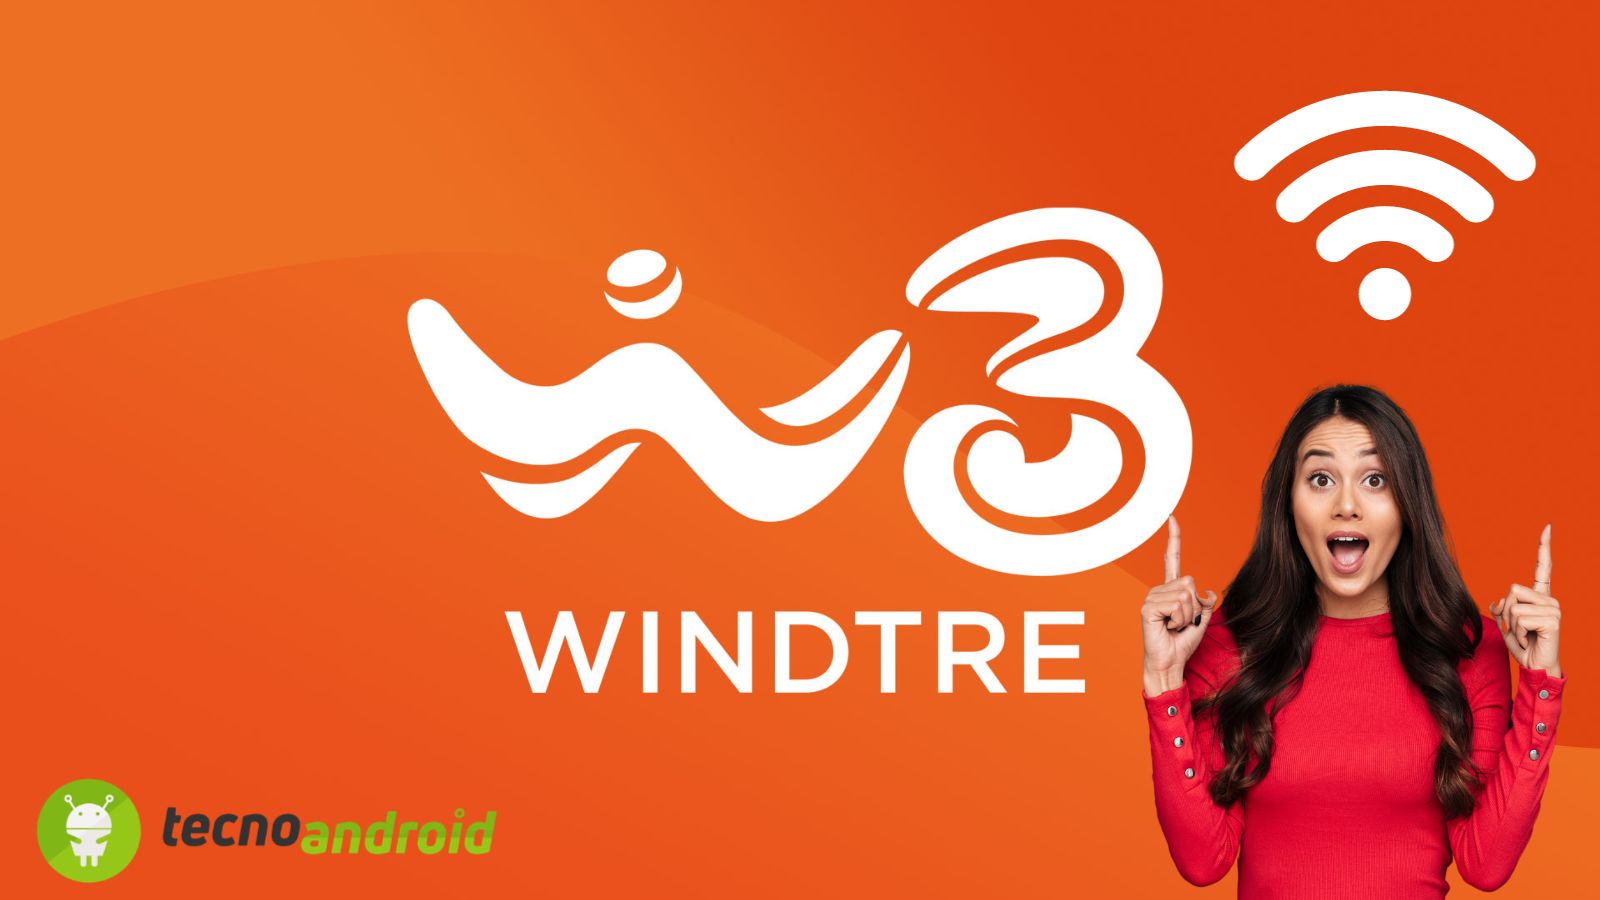 WindTre offre un nuovo servizio completamente GRATUITO